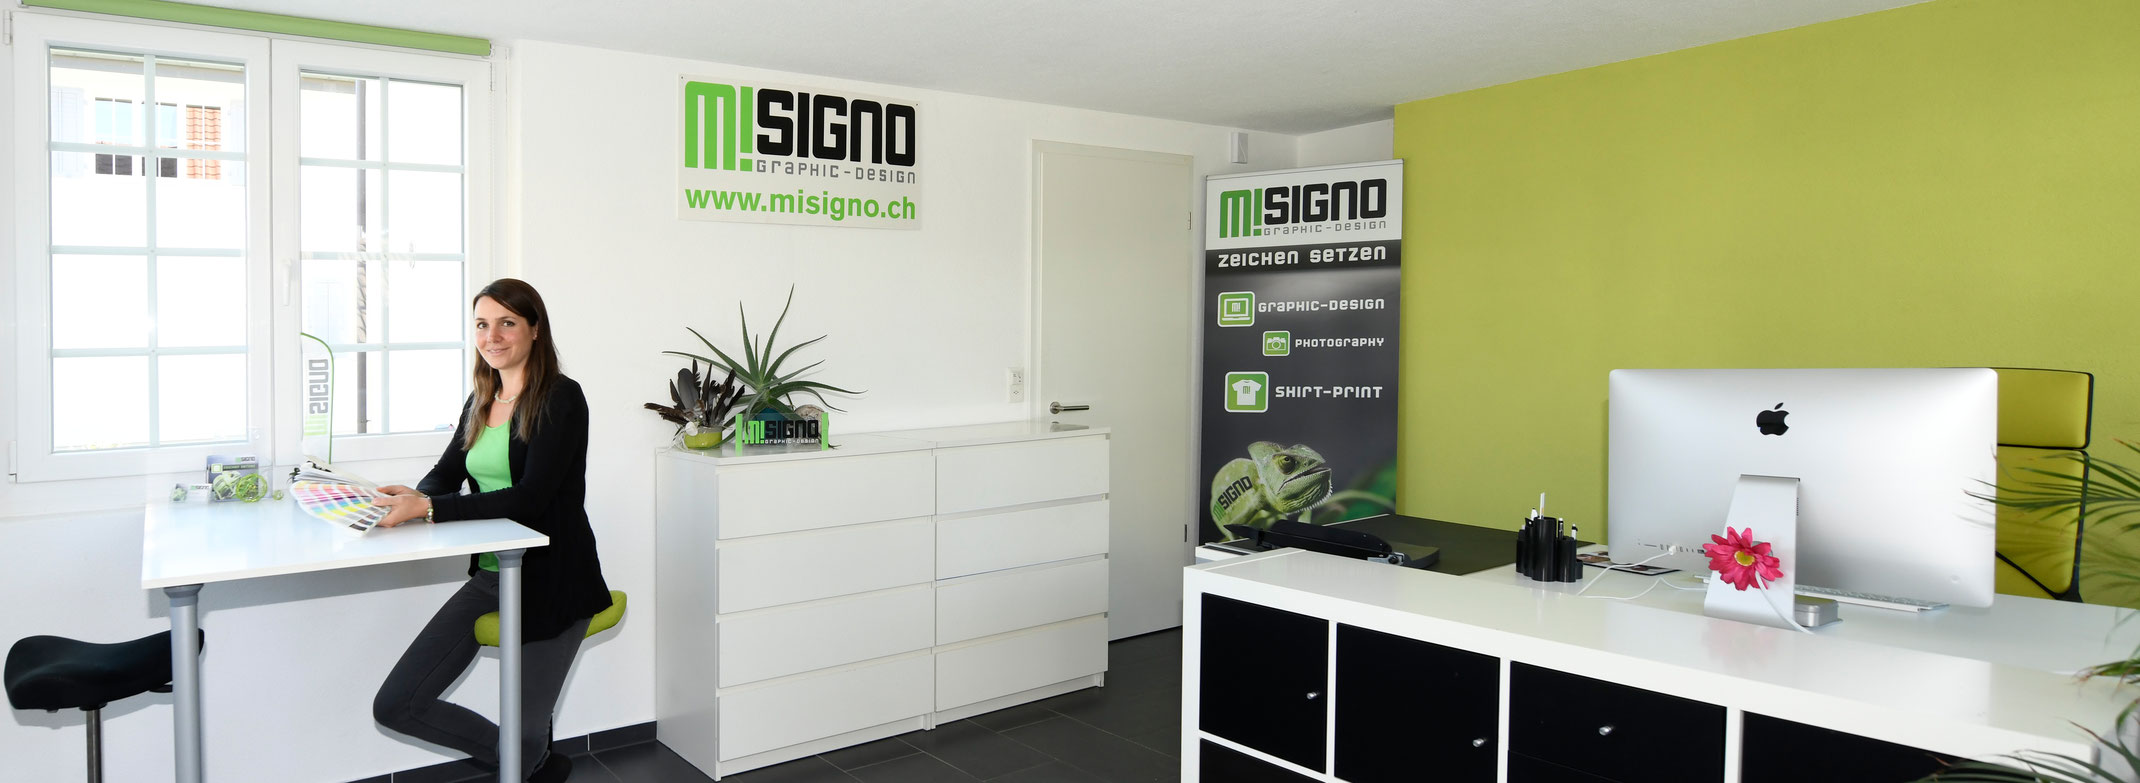 (c) Misigno.ch